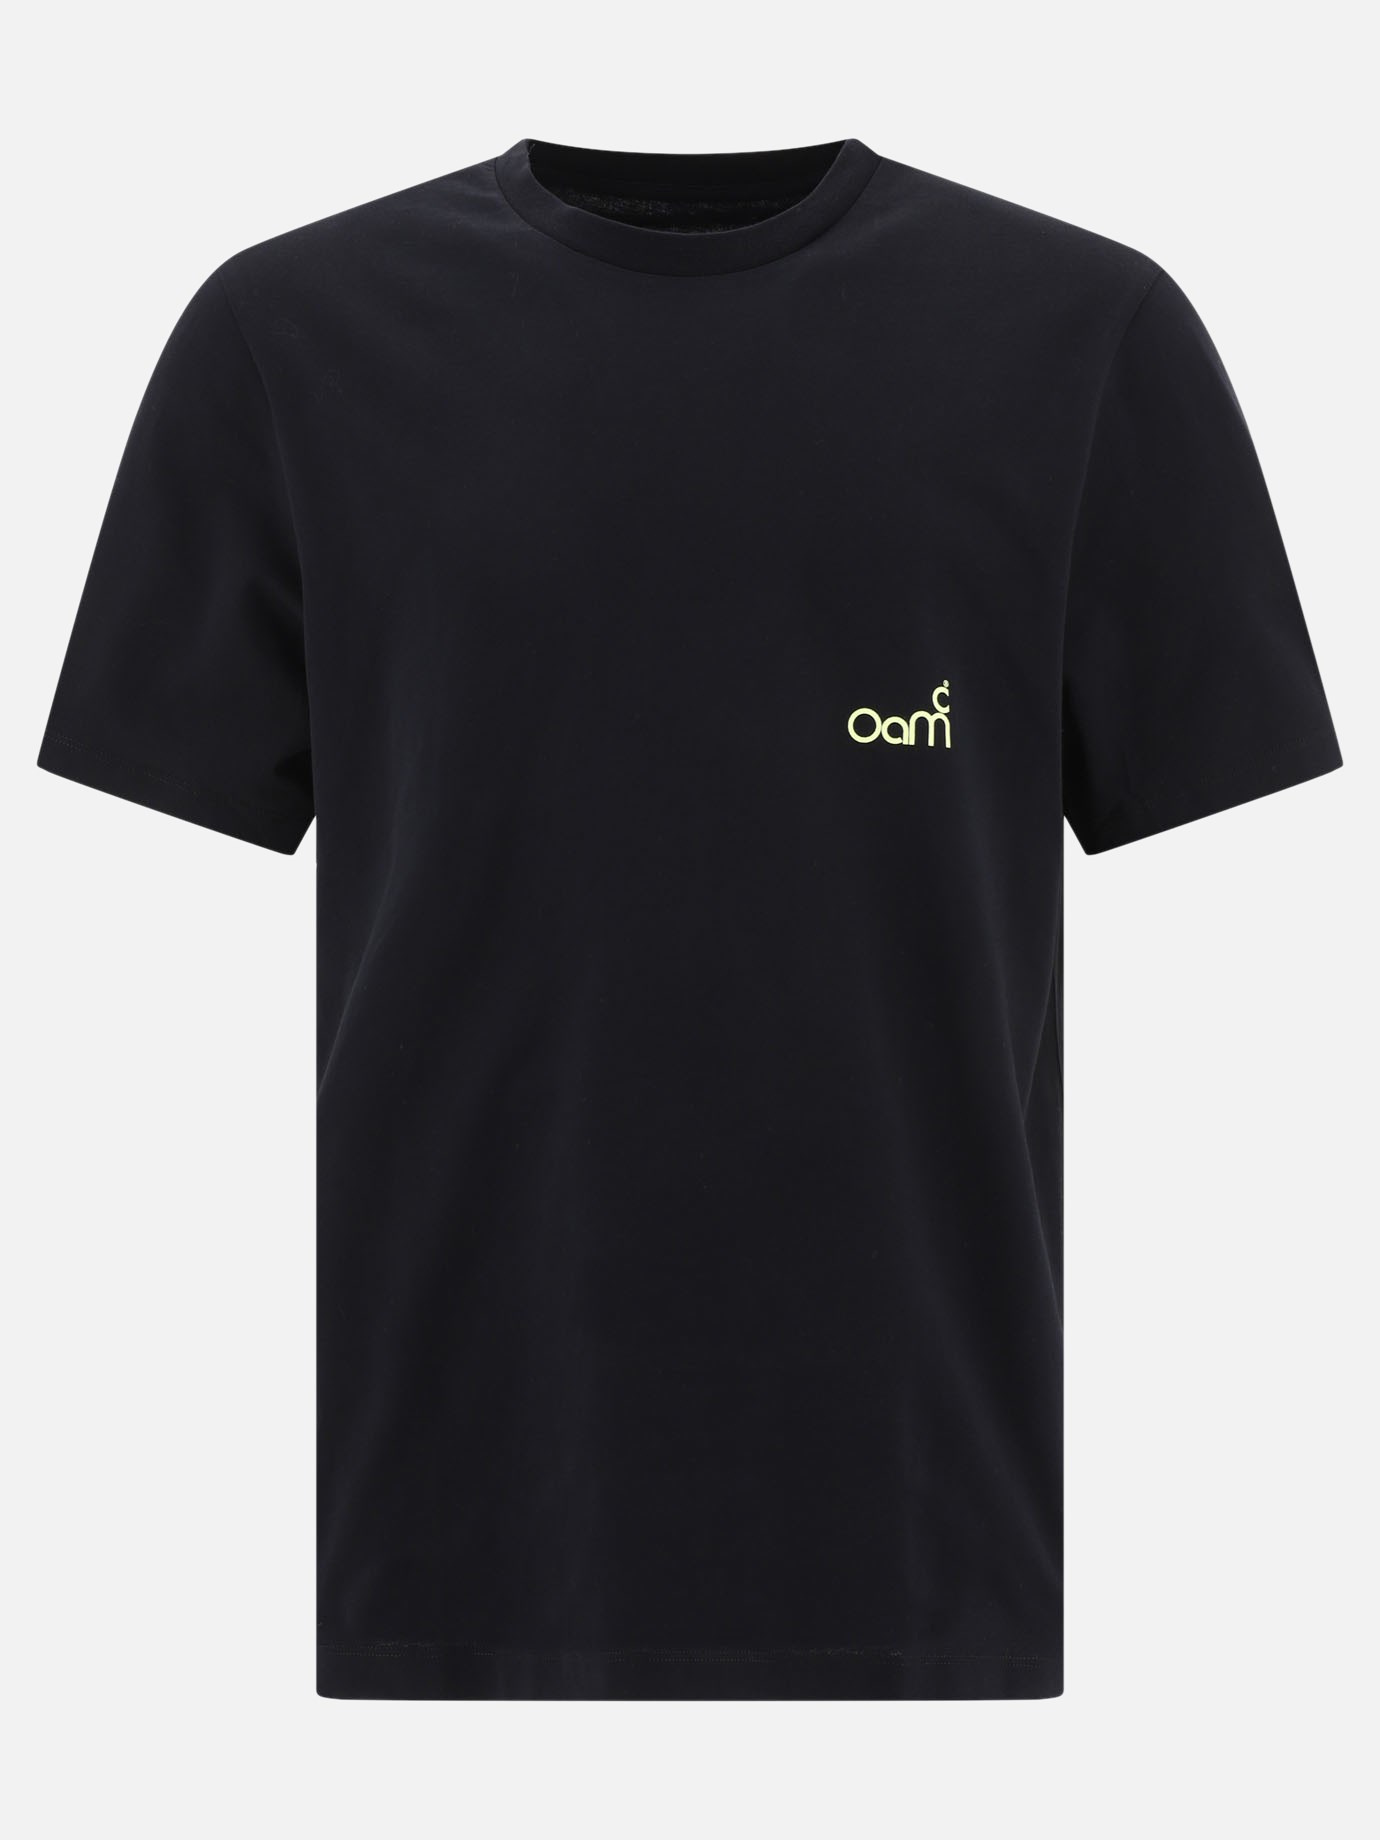  Oay  t-shirtby OAMC - 5